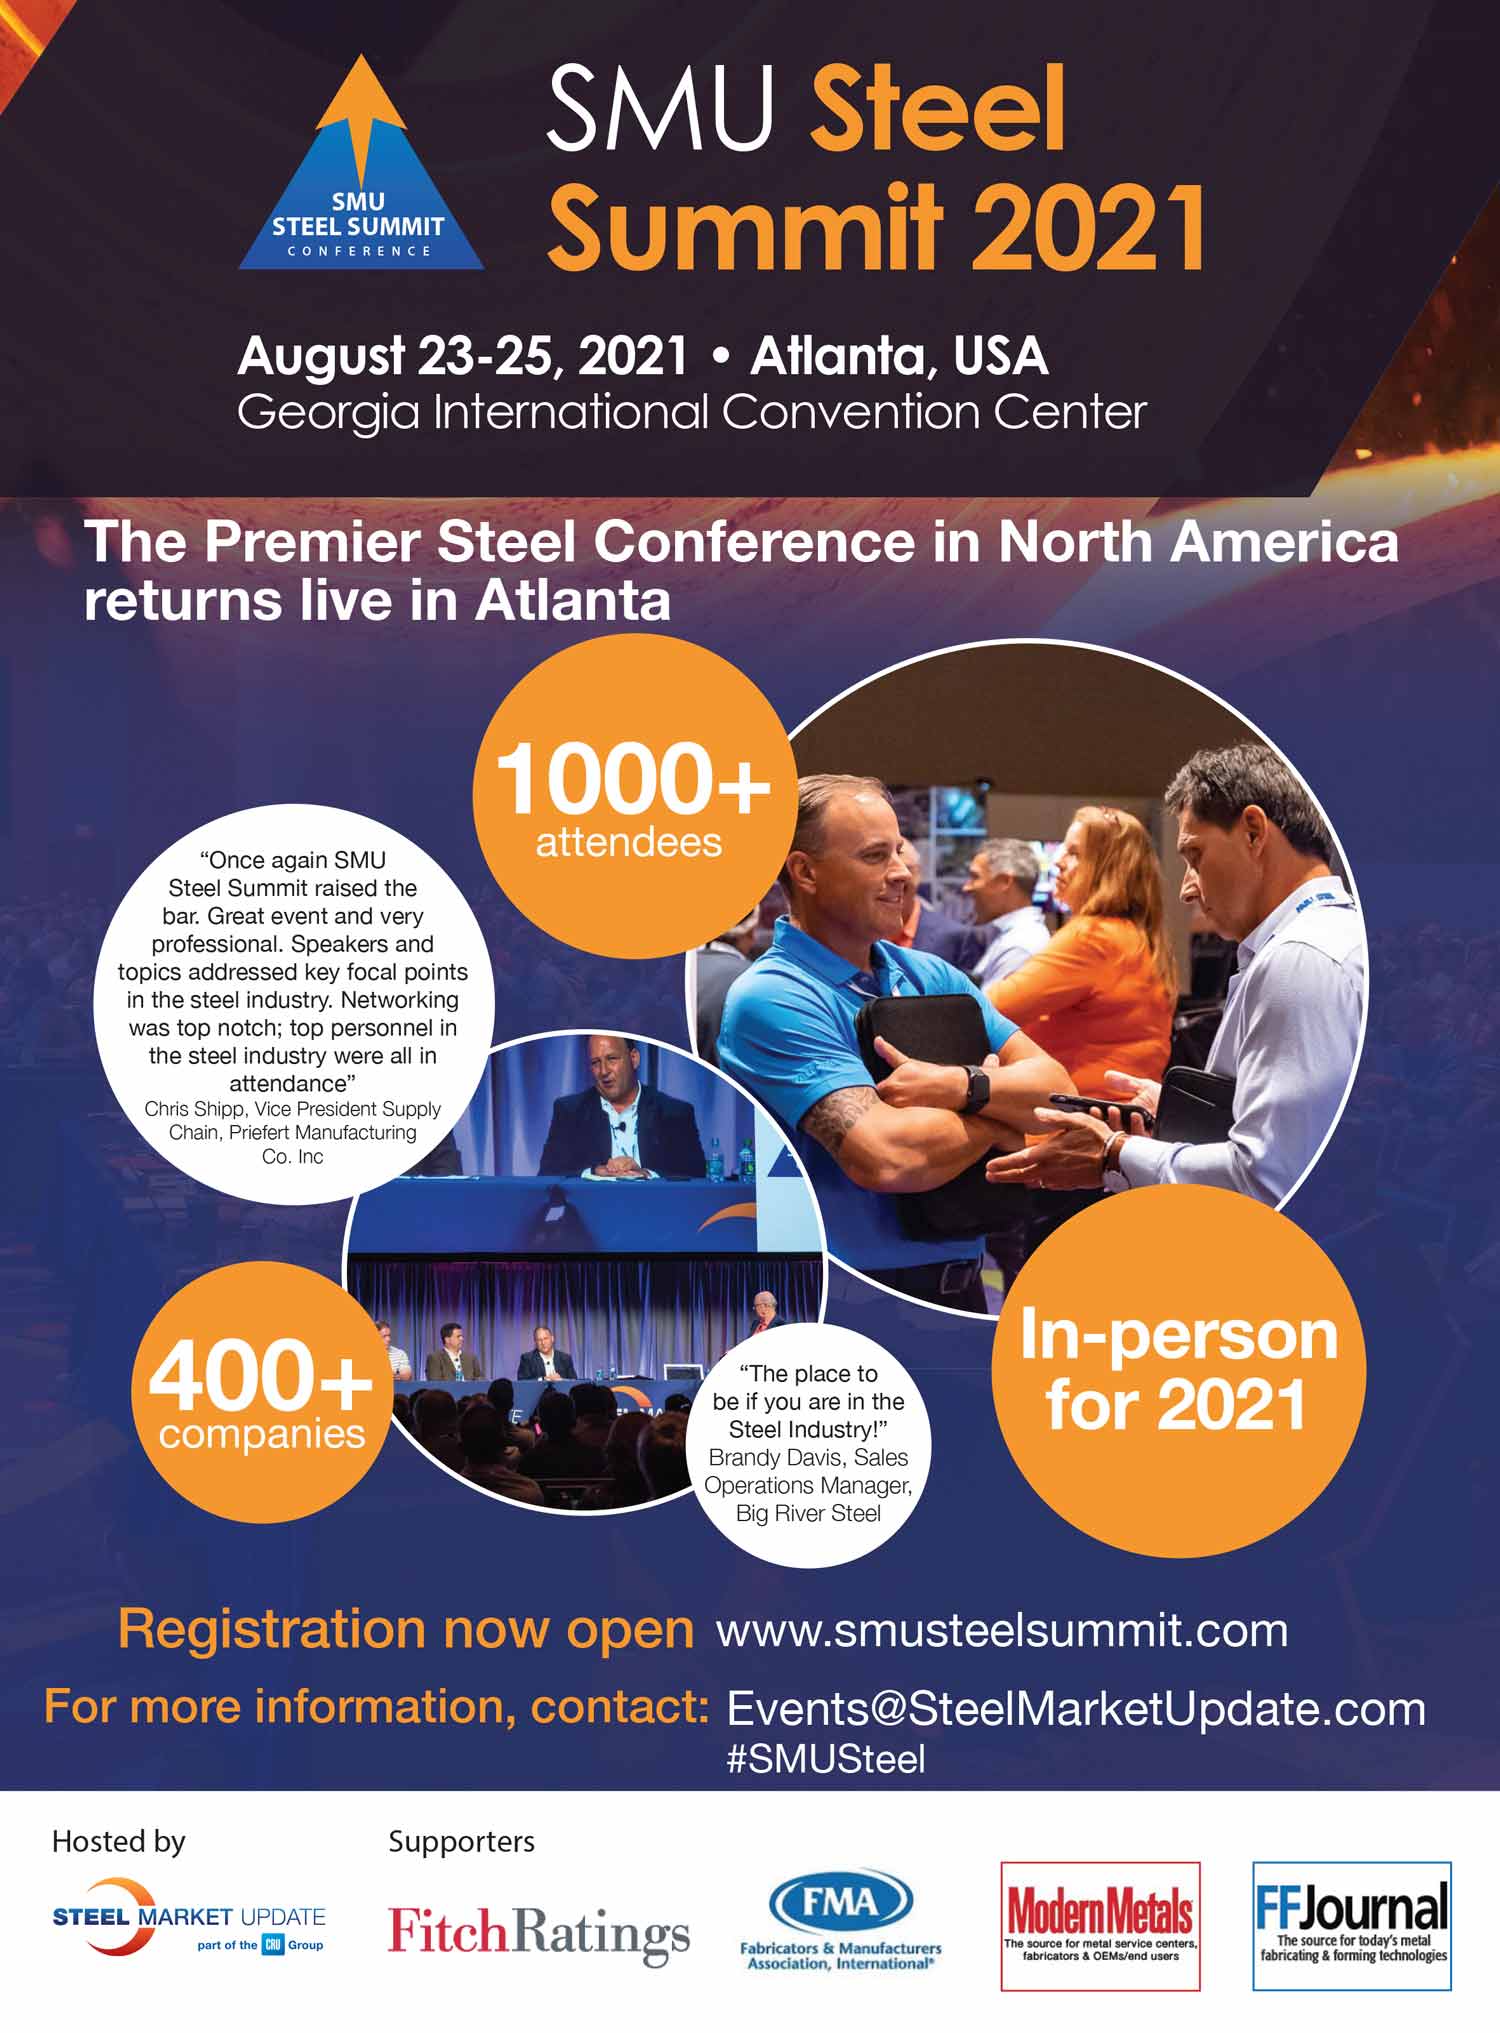 SMU Steel Summit 2021 Advertisement